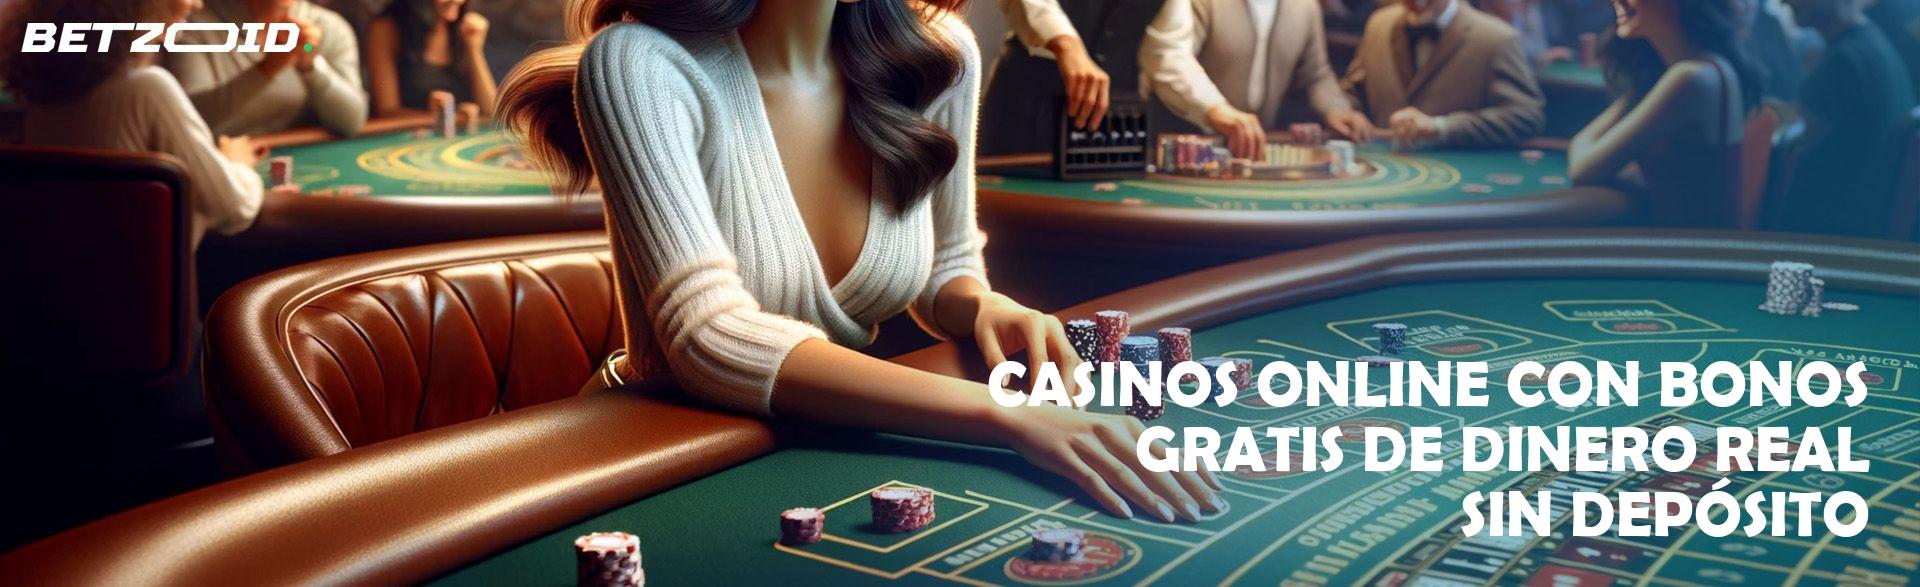 Casinos en línea con bonos gratuitos